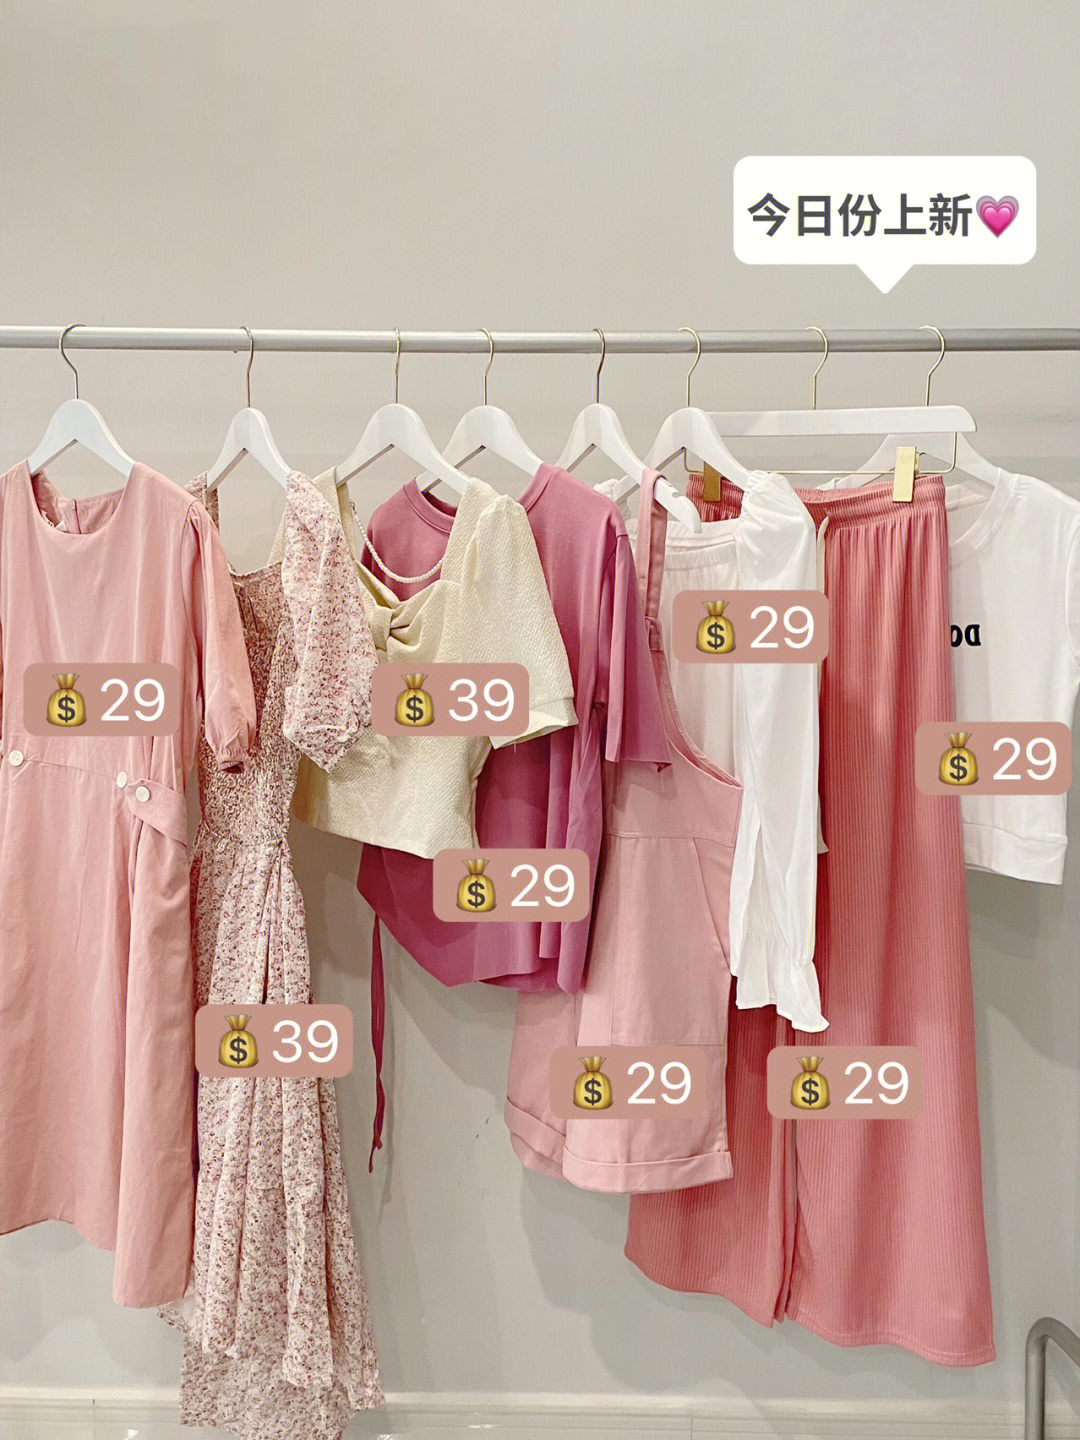 中国常见女装平价品牌图片